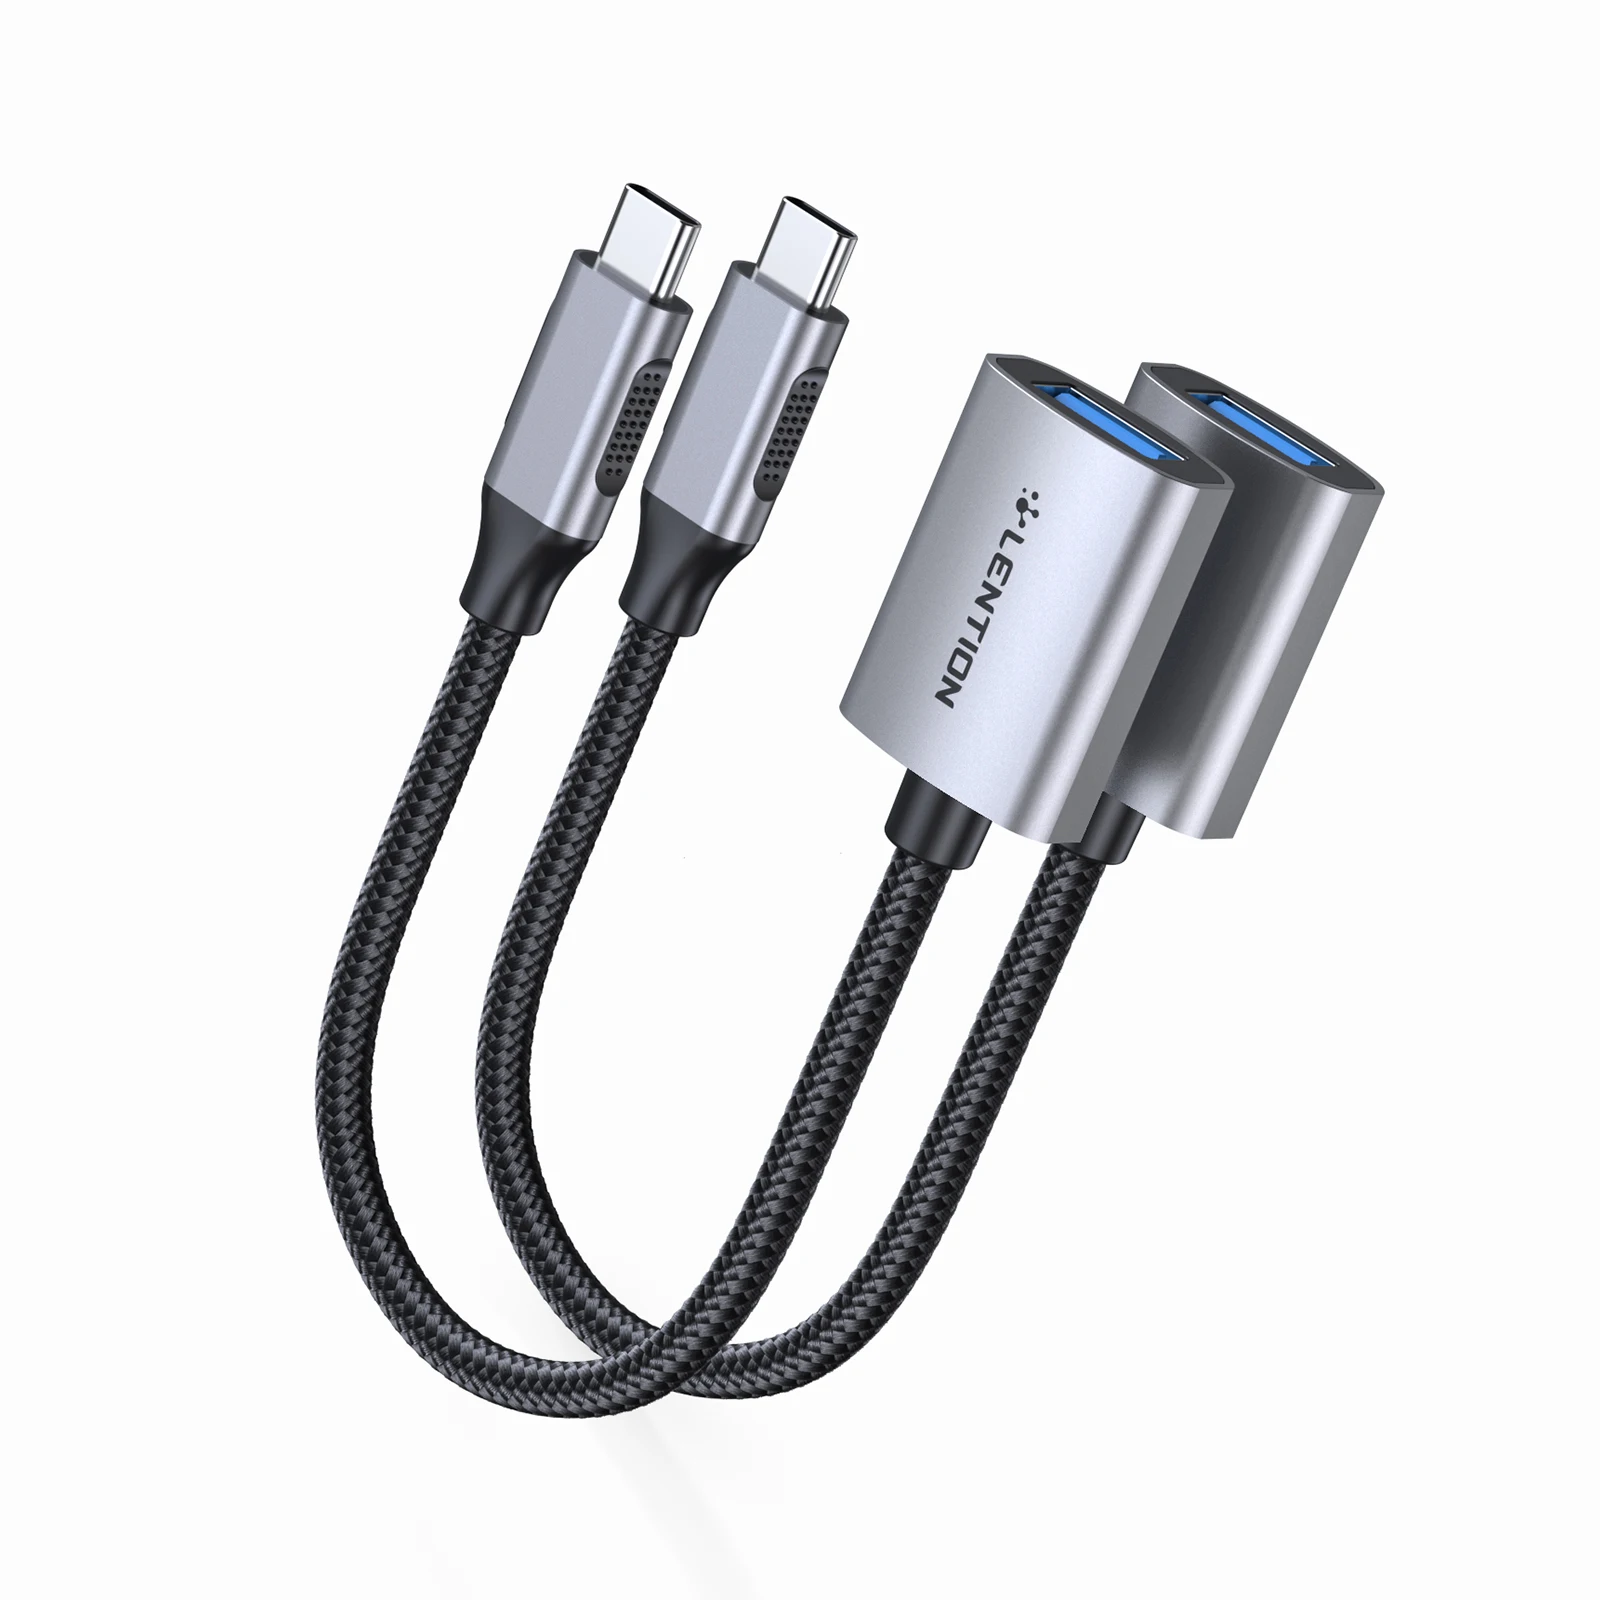 محول USB C إلى USB 3.0 [2-Pack] ، محول Thunderbolt 3 إلى USB 3.0 متوافق مع MacBook Pro ، جديد iPad Pro & Mac سطح الهواء Book2